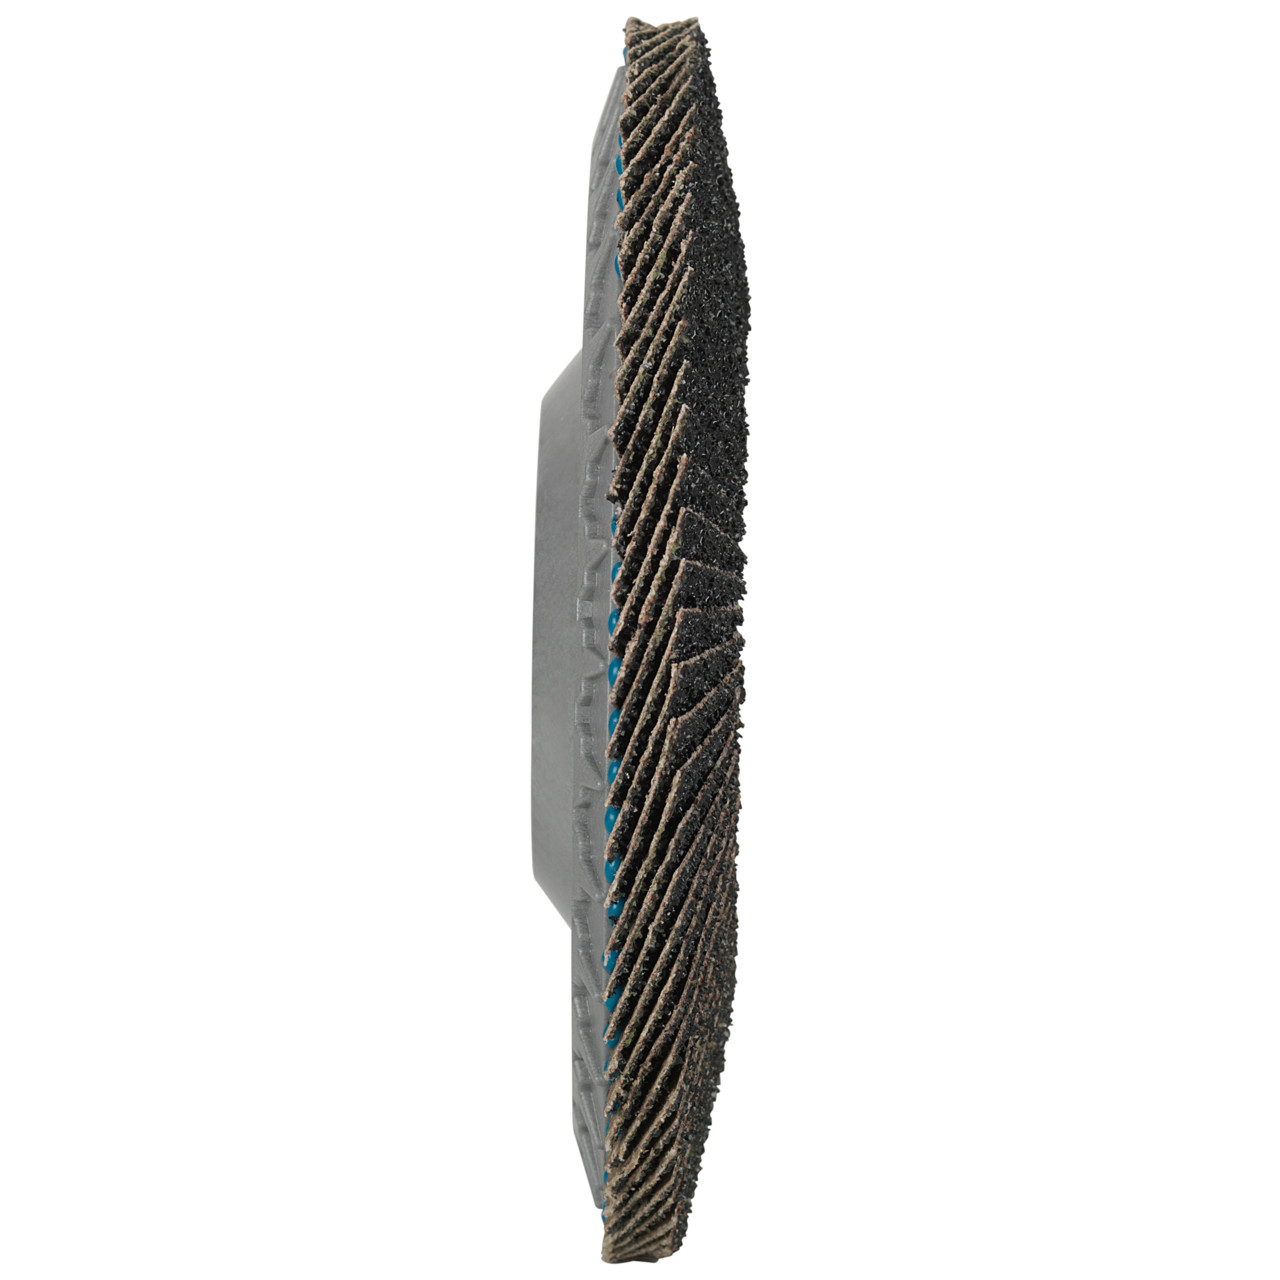 Tyrolit Gekartelde borgring DxH 115x22,23 LONGLIFE C-TRIM voor staal en roestvrij staal, P60, vorm: 28N - rechte uitvoering (kunststof draaglichaam), Art. 34239192